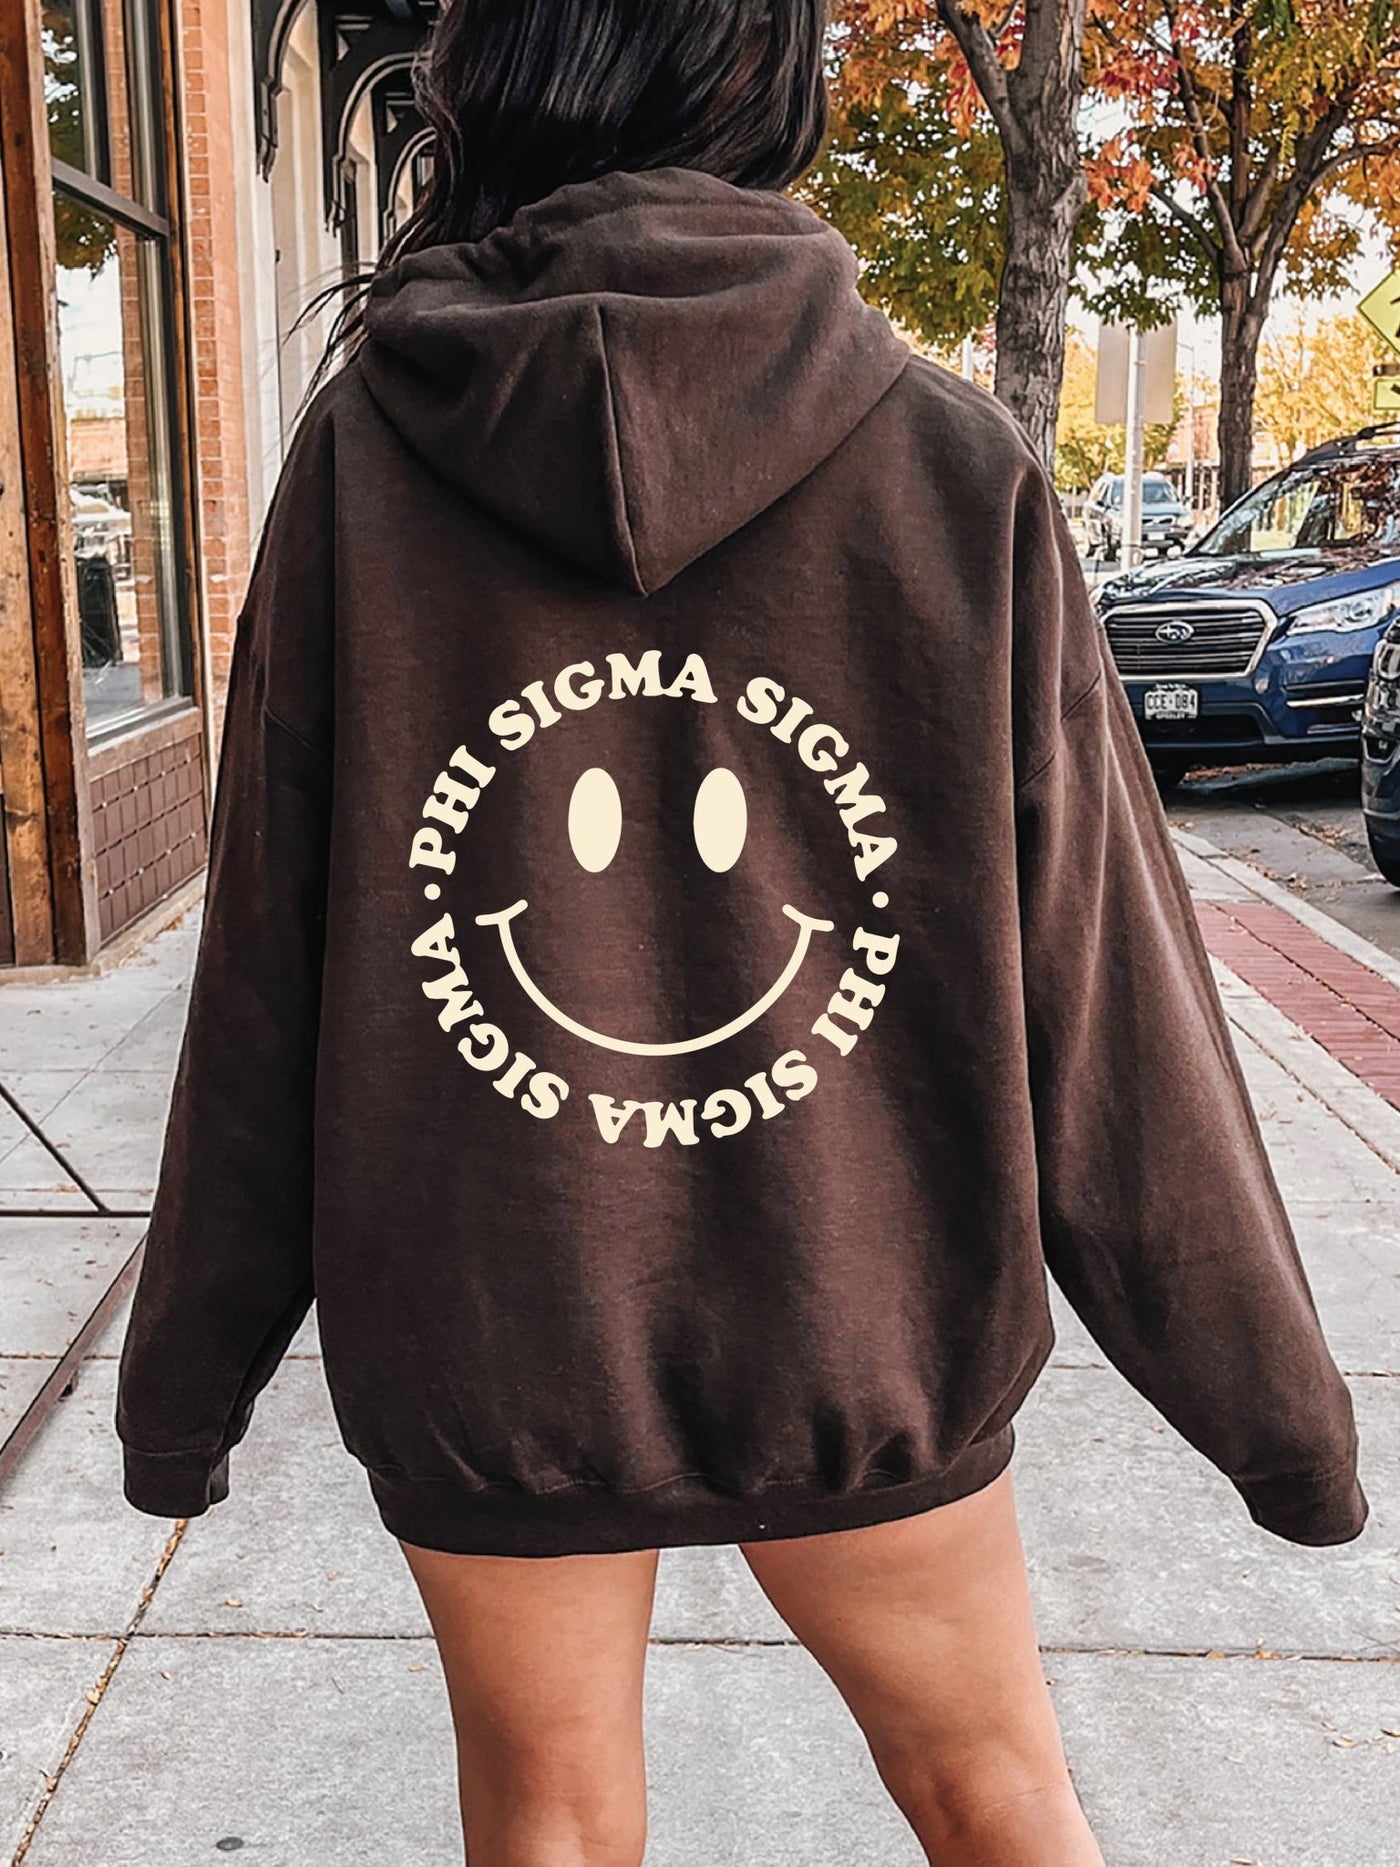 Phi Sigma Sigma Smiley Sorority Sweatshirt | Trendy Phi Sig Custom Sorority Hoodie